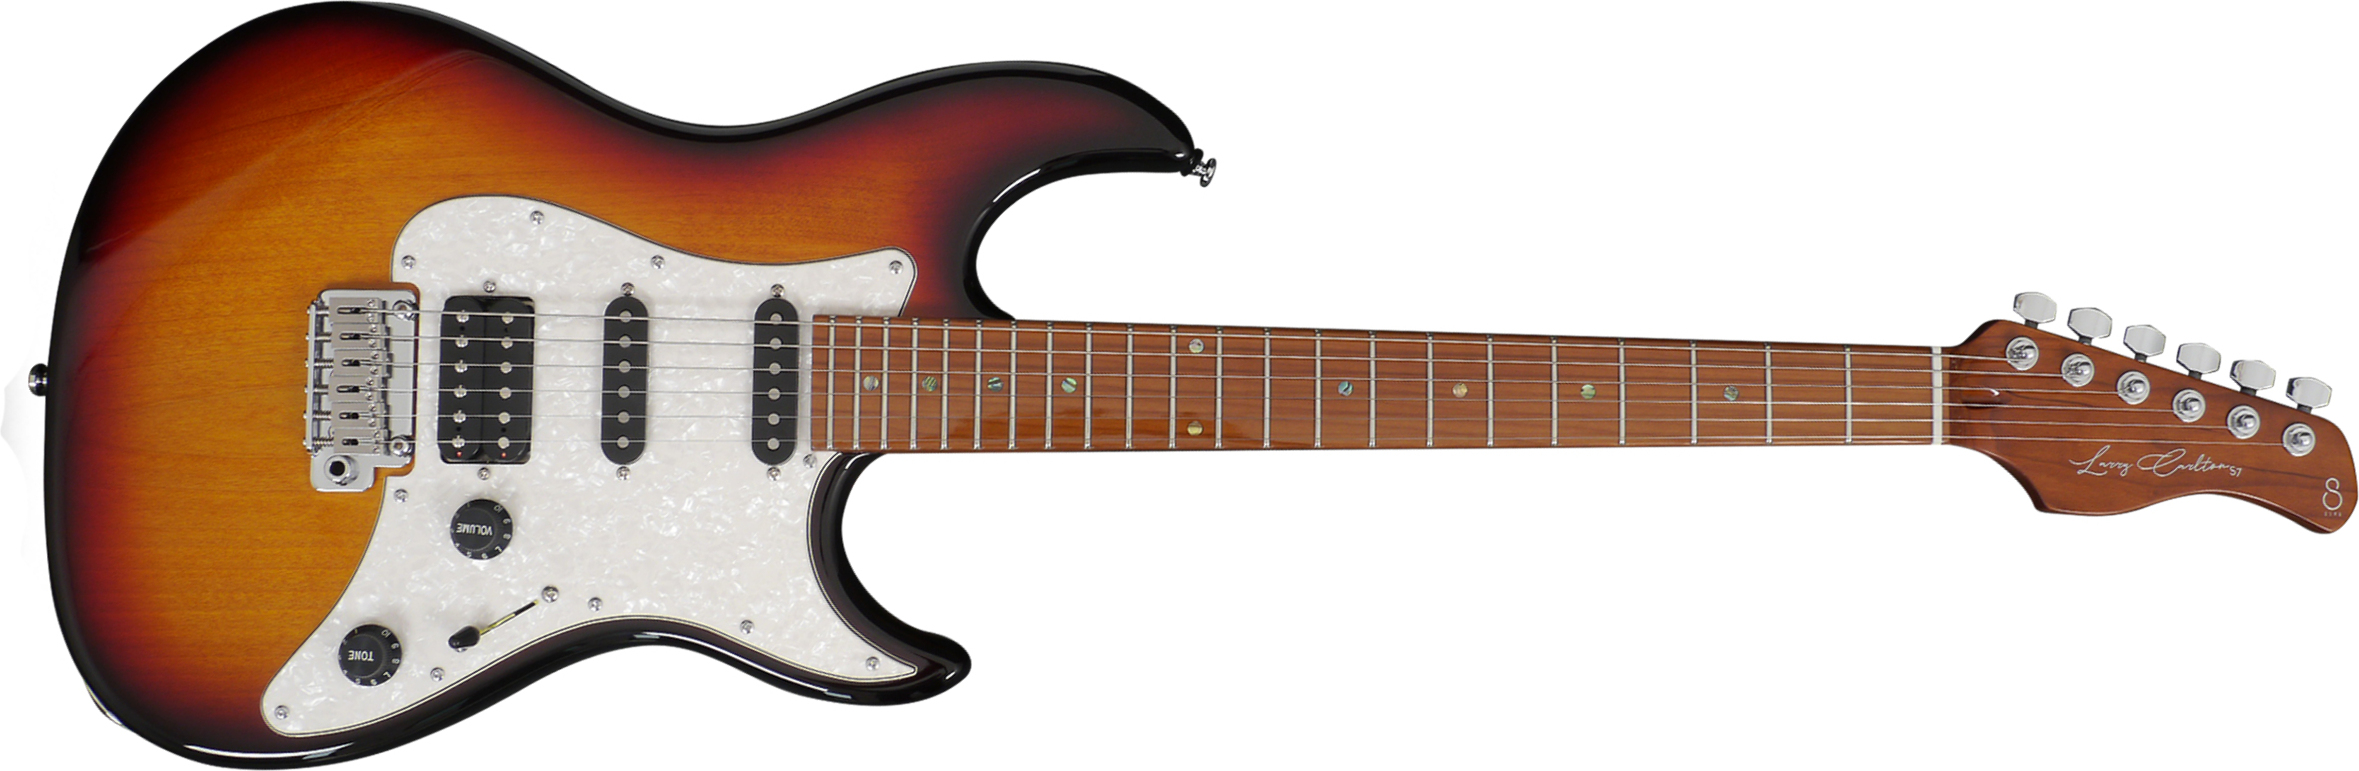 Sire Larry Carlton S7 Signature Hss Trem Eb - 3 Tone Sunburst - Guitare Électrique Forme Str - Main picture